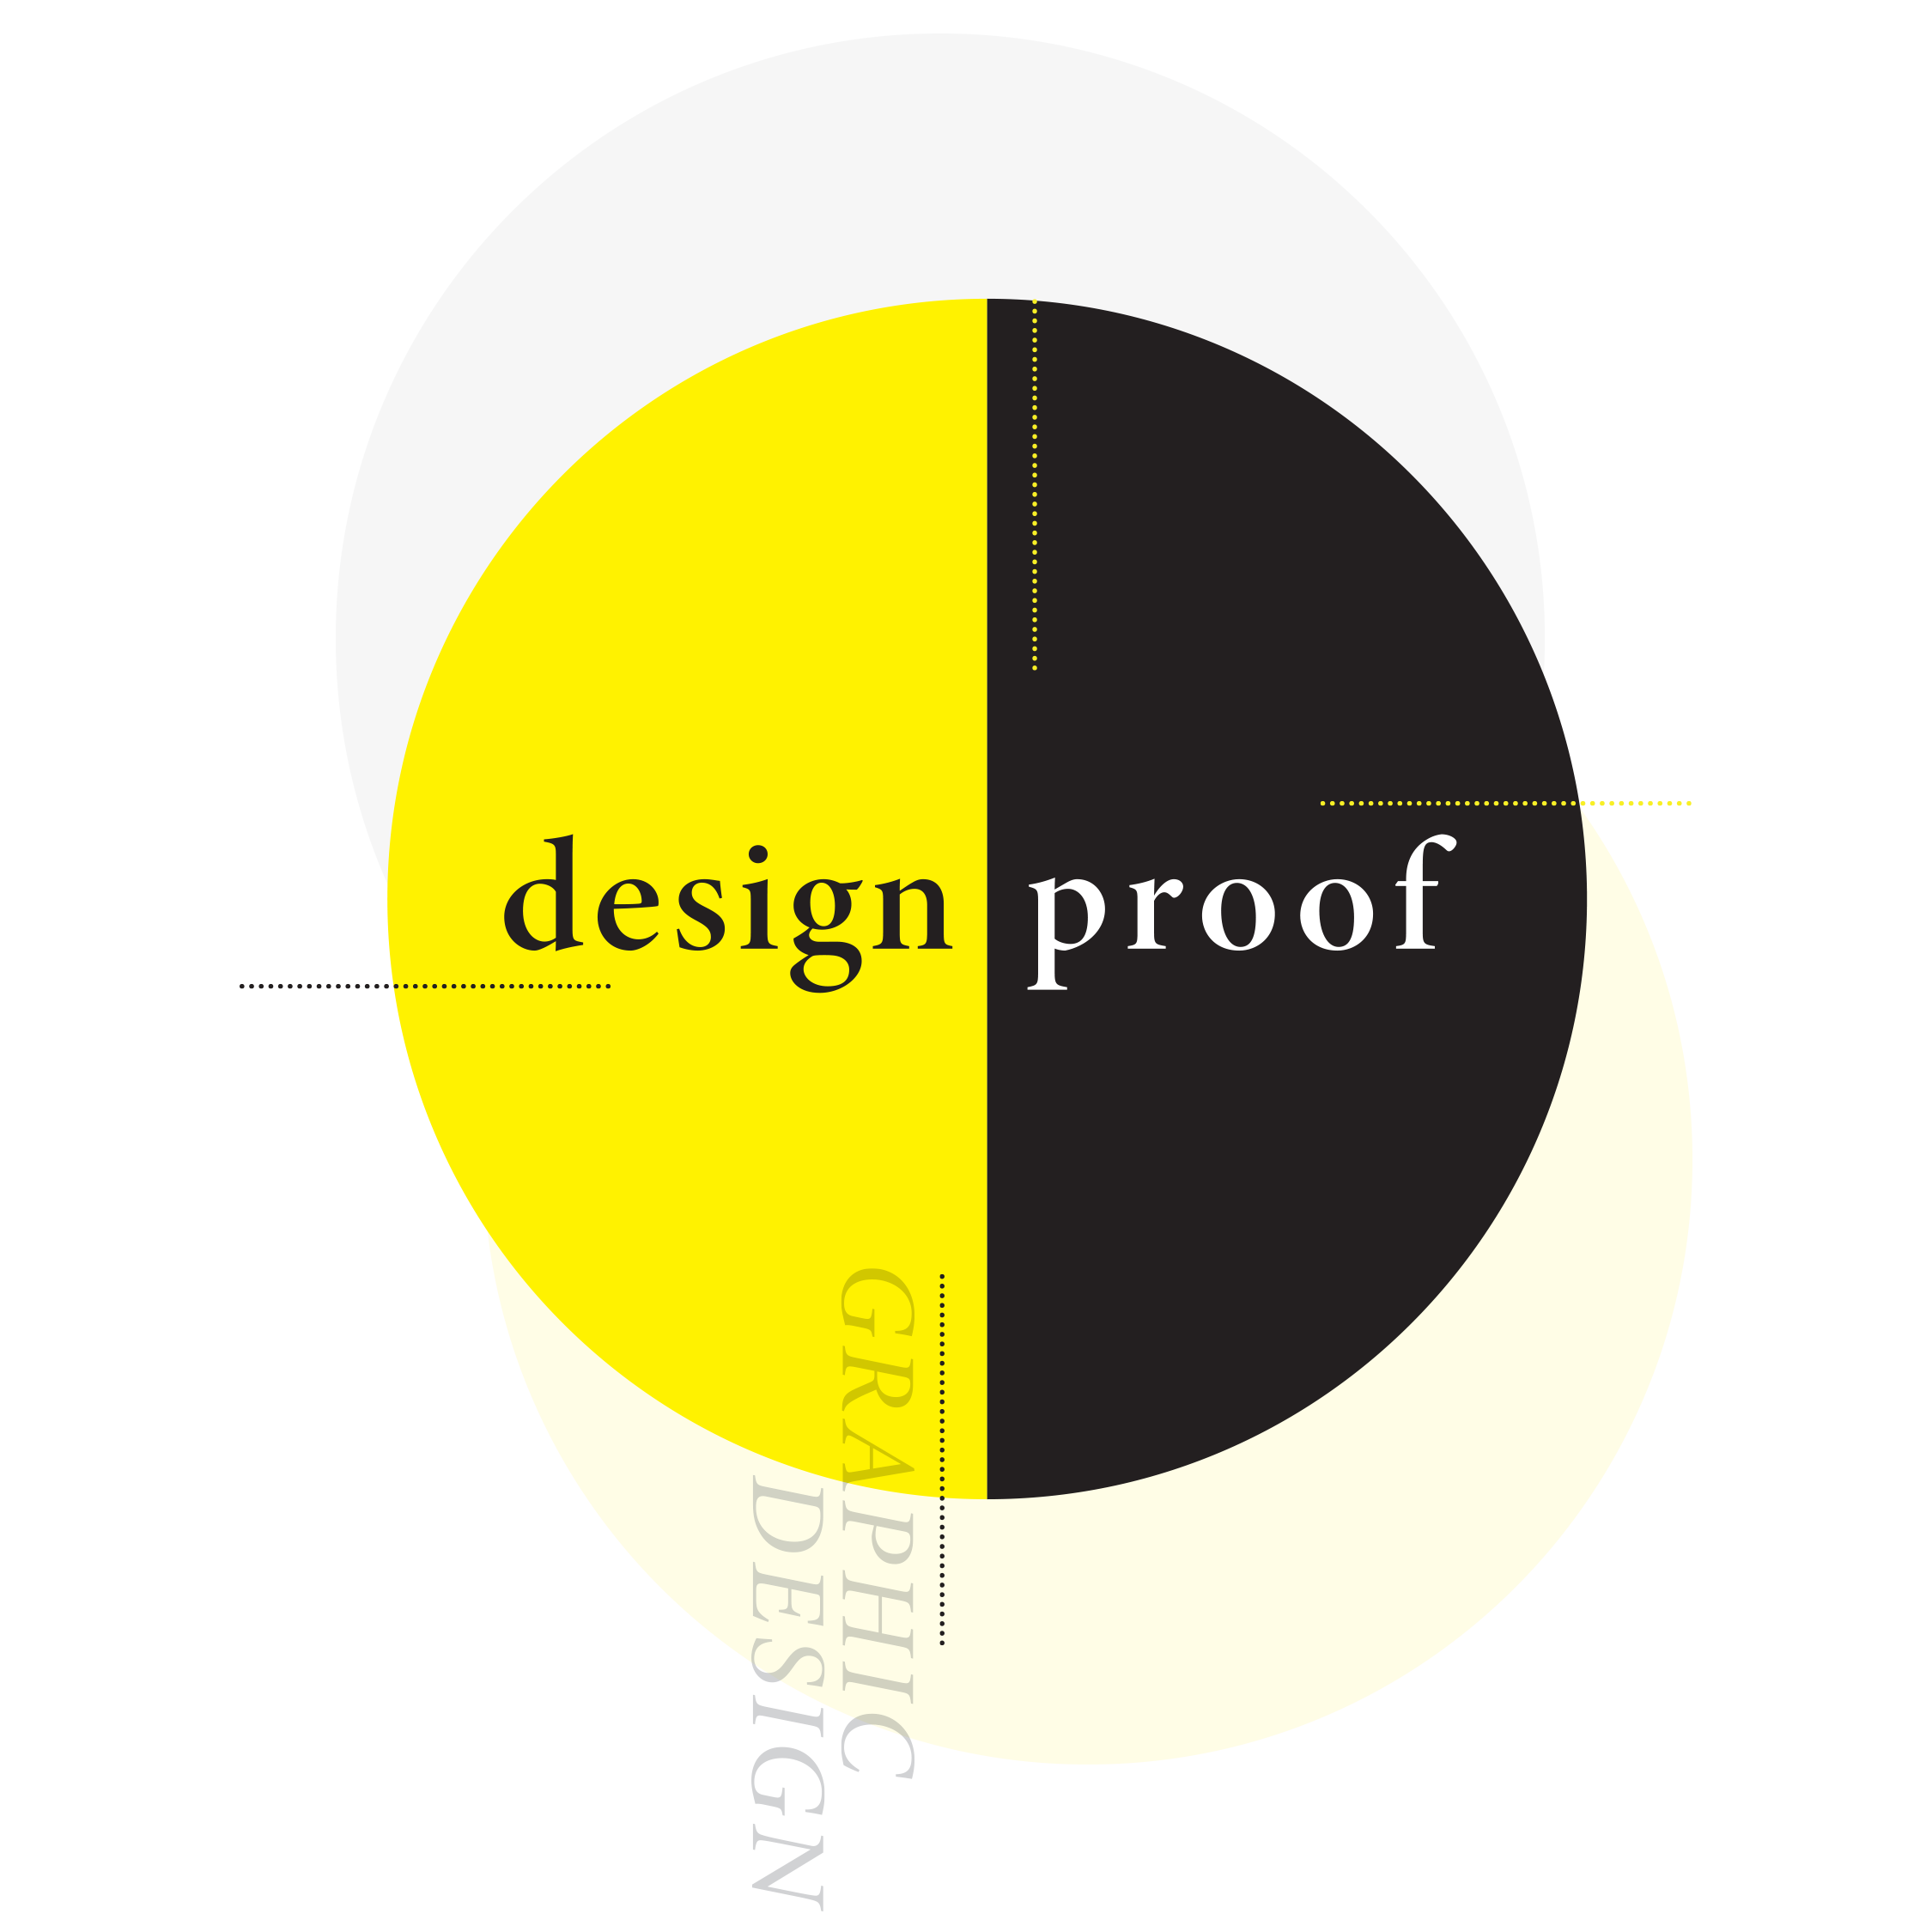 Design proof